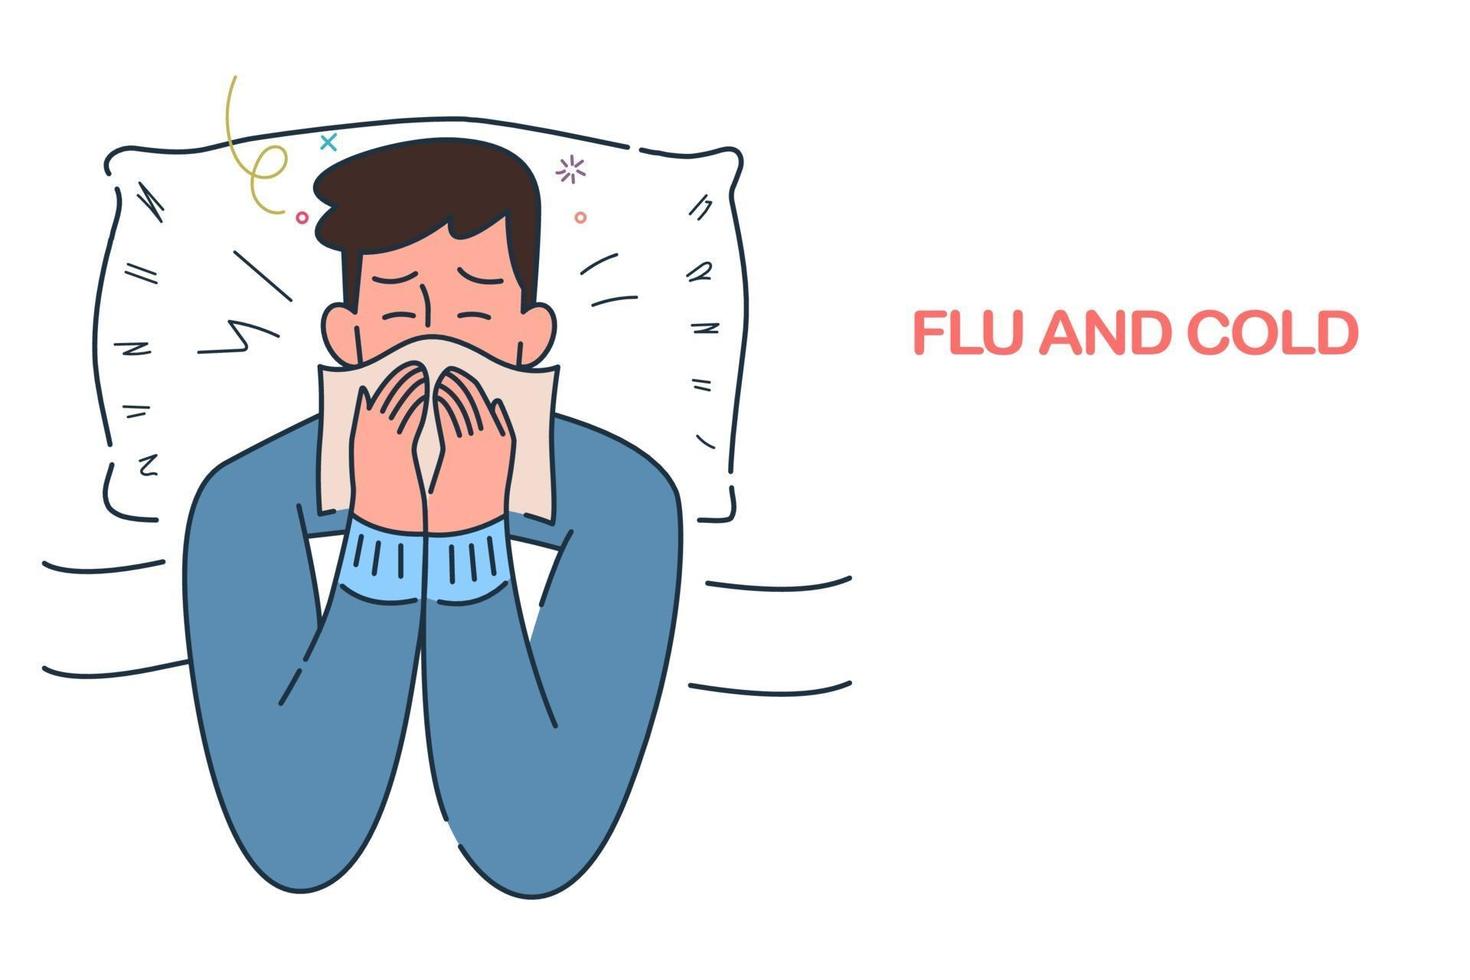 doente deitado na cama com gripe e resfriado debaixo do cobertor, infecções sazonais de alergia, ilustração em vetor estilo desenhado à mão.